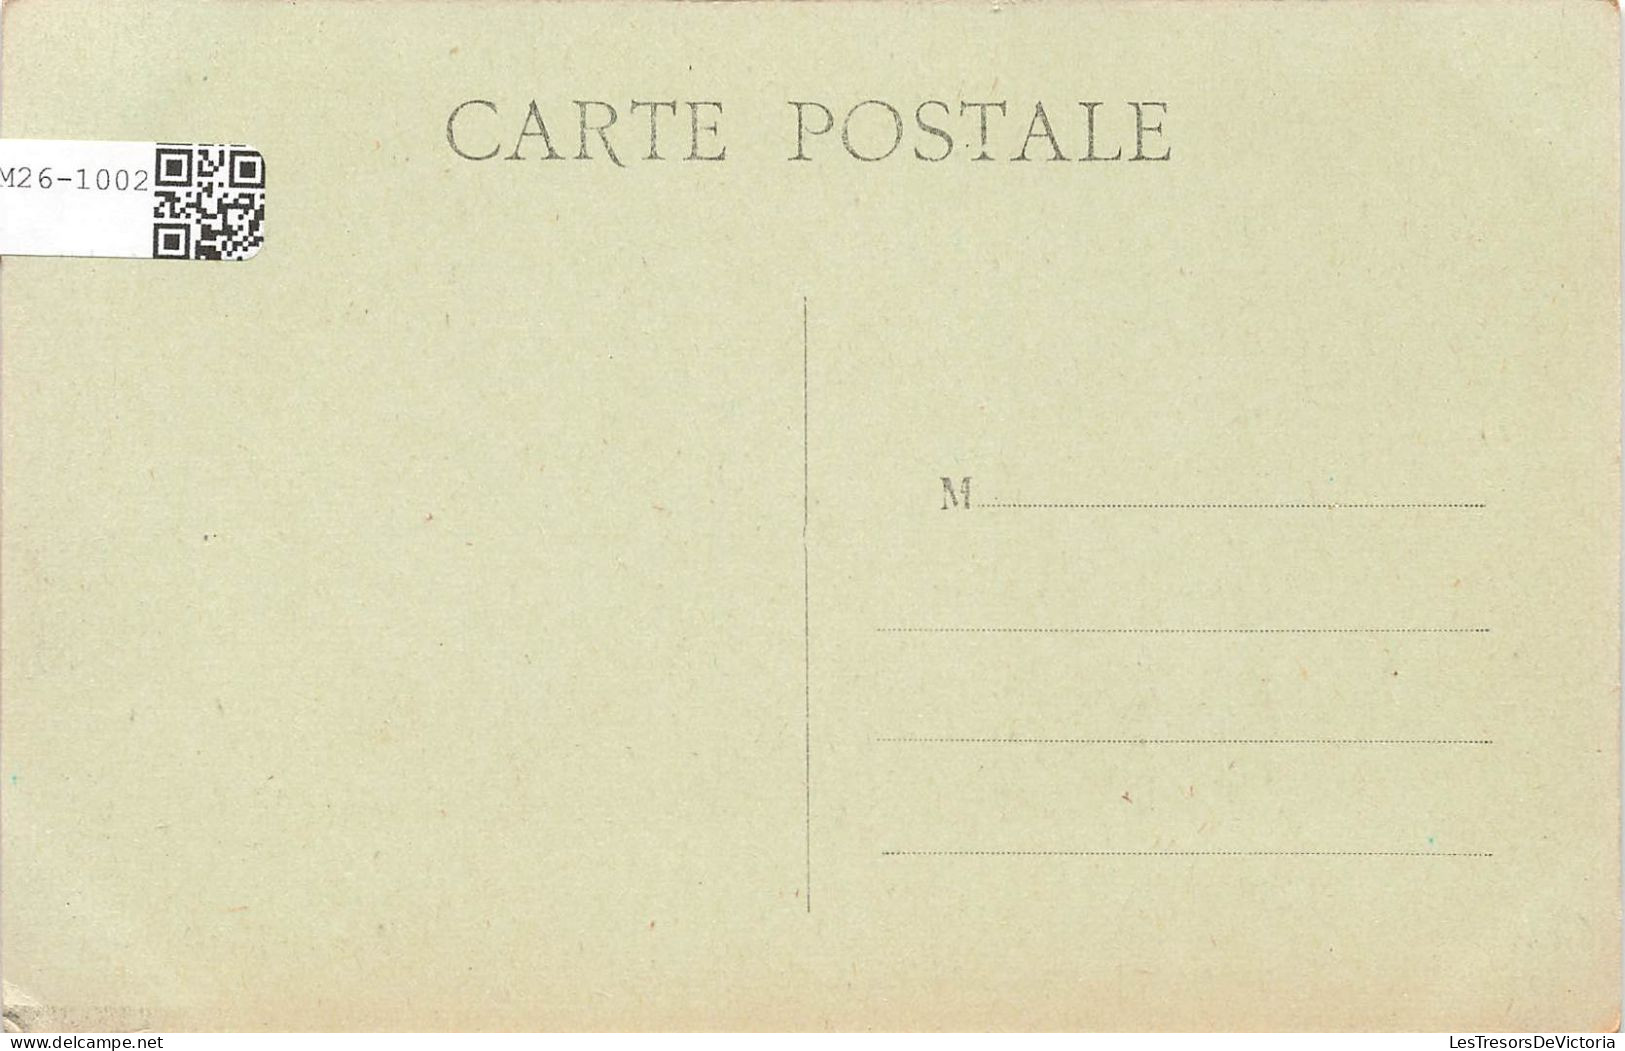 FRANCE - Malakoff La Tour - Vue Générale De La Mairie - Carte Postale Ancienne - Malakoff